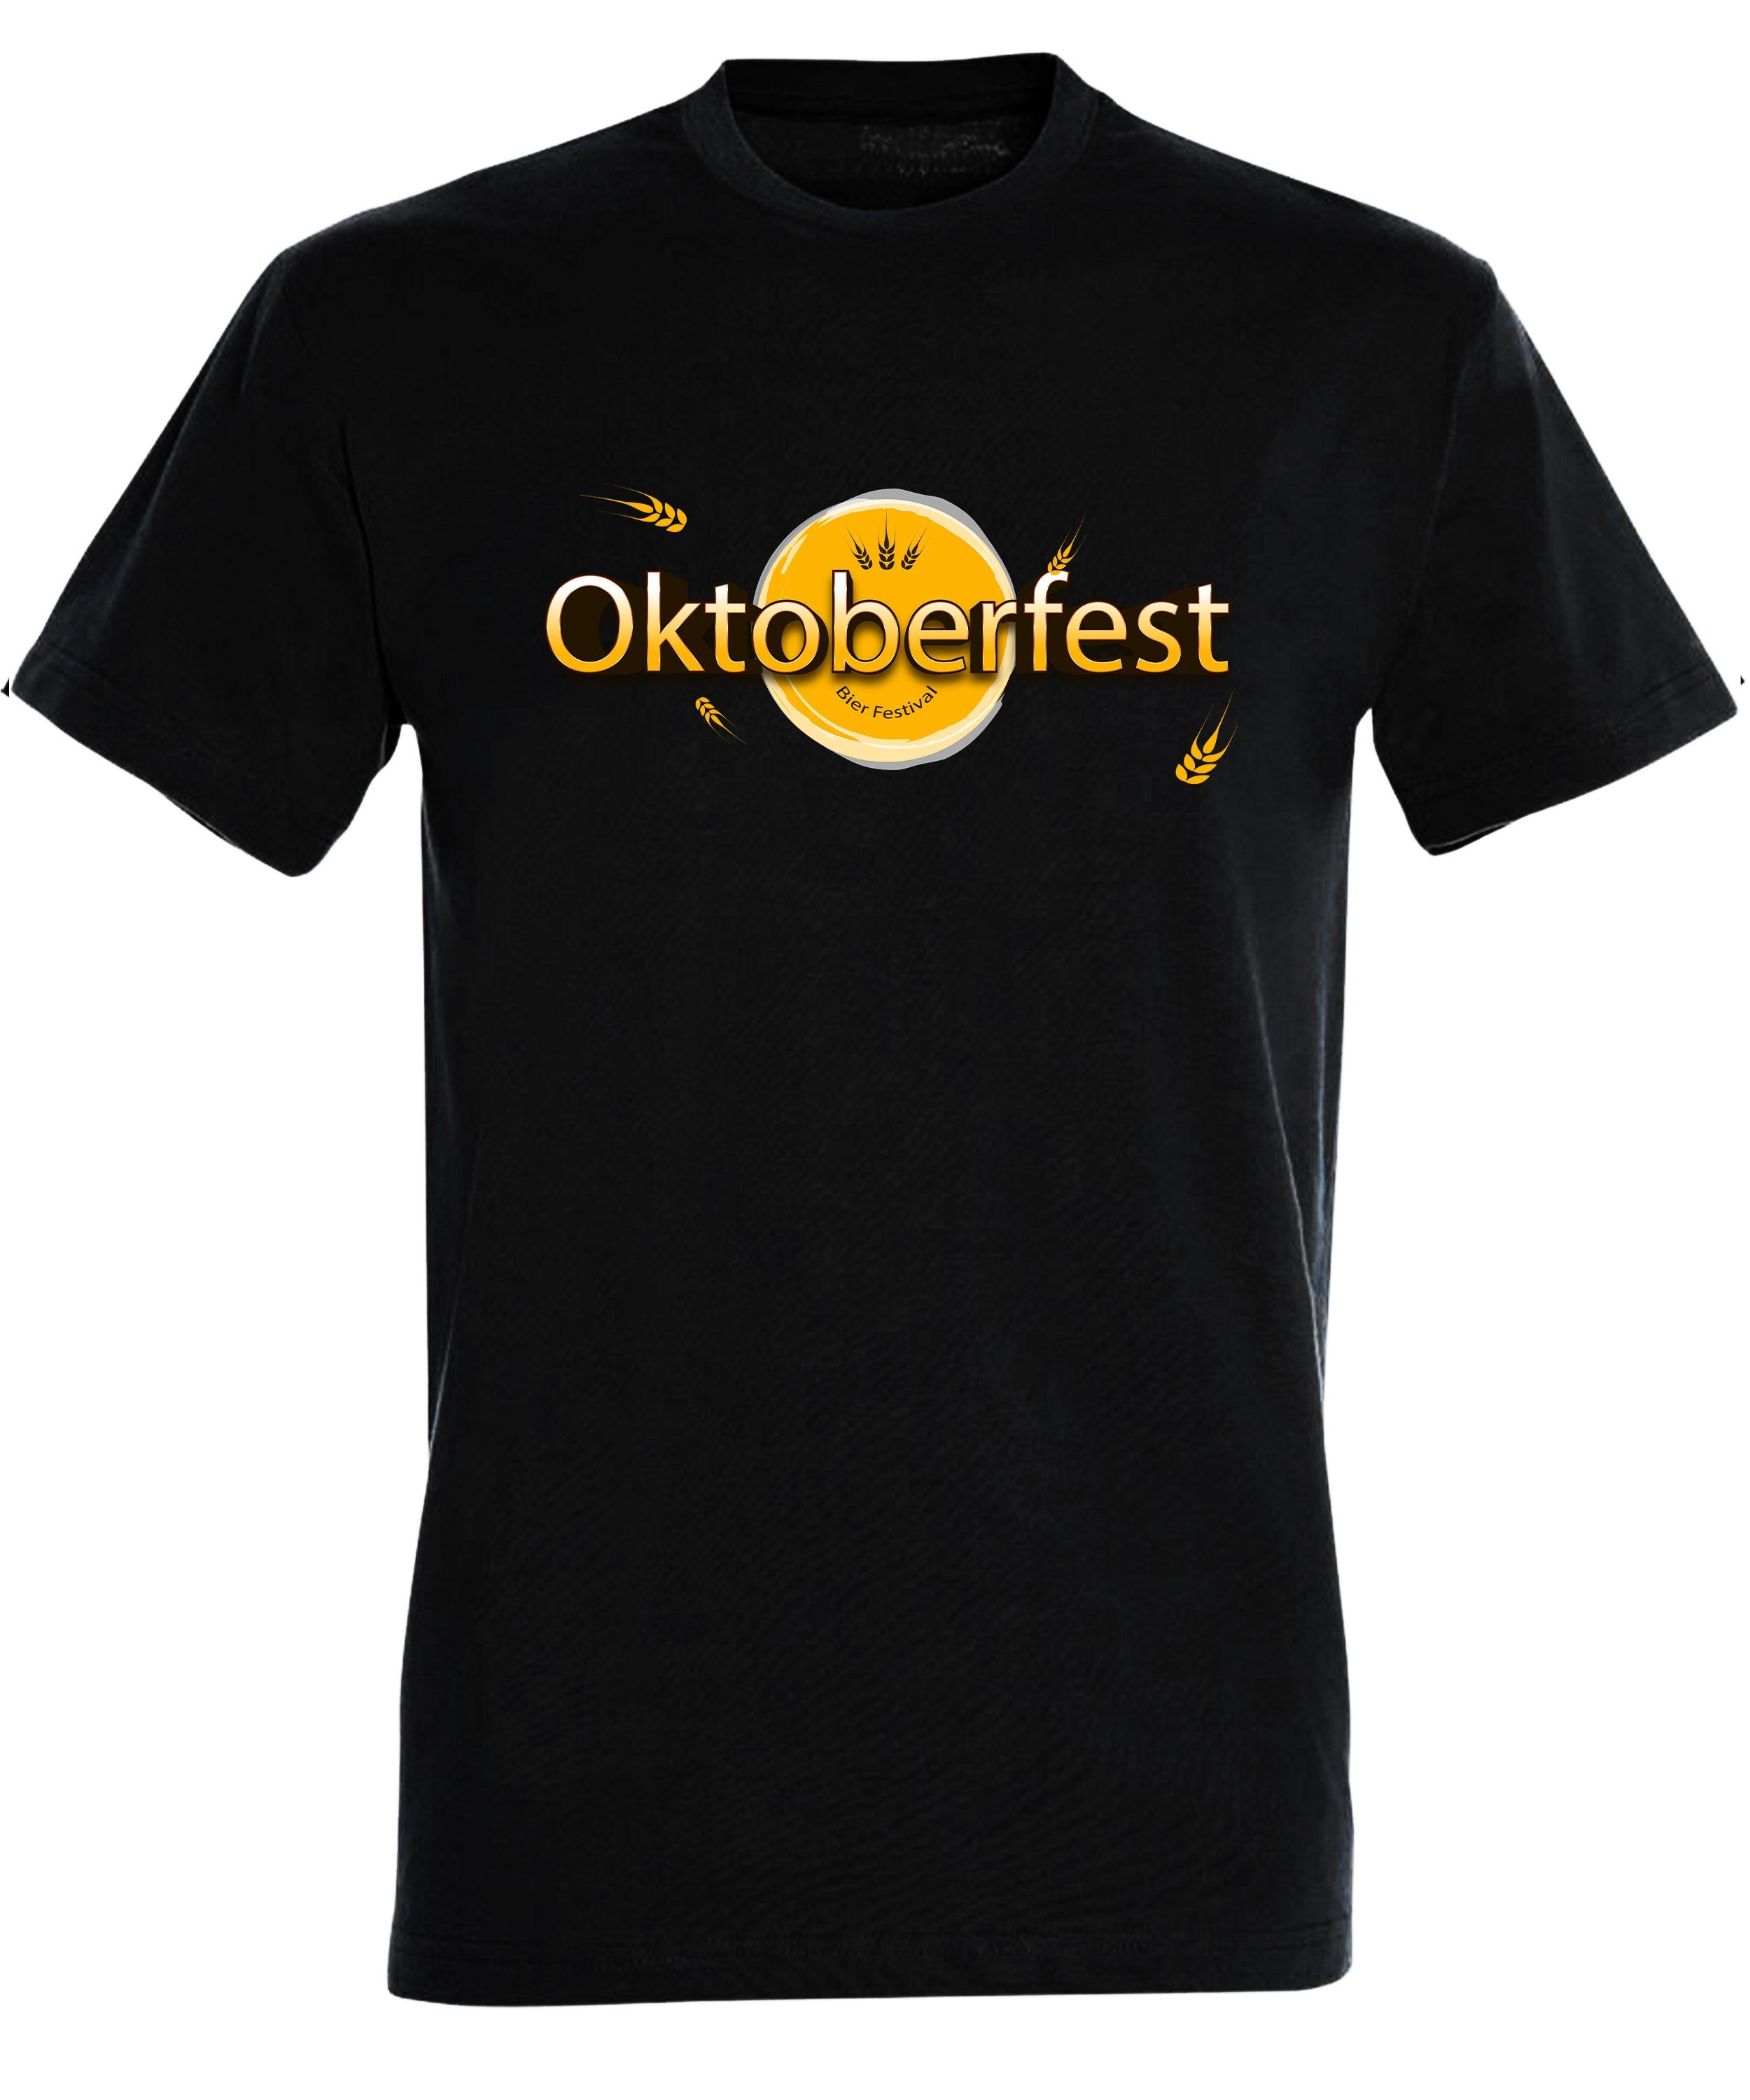 Regular mit Trinkshirt Baumwollshirt Bier Herren Shirt schwarz Oktoberfest i325 Aufdruck Festival MyDesign24 T-Shirt - Party T-Shirt Fit,